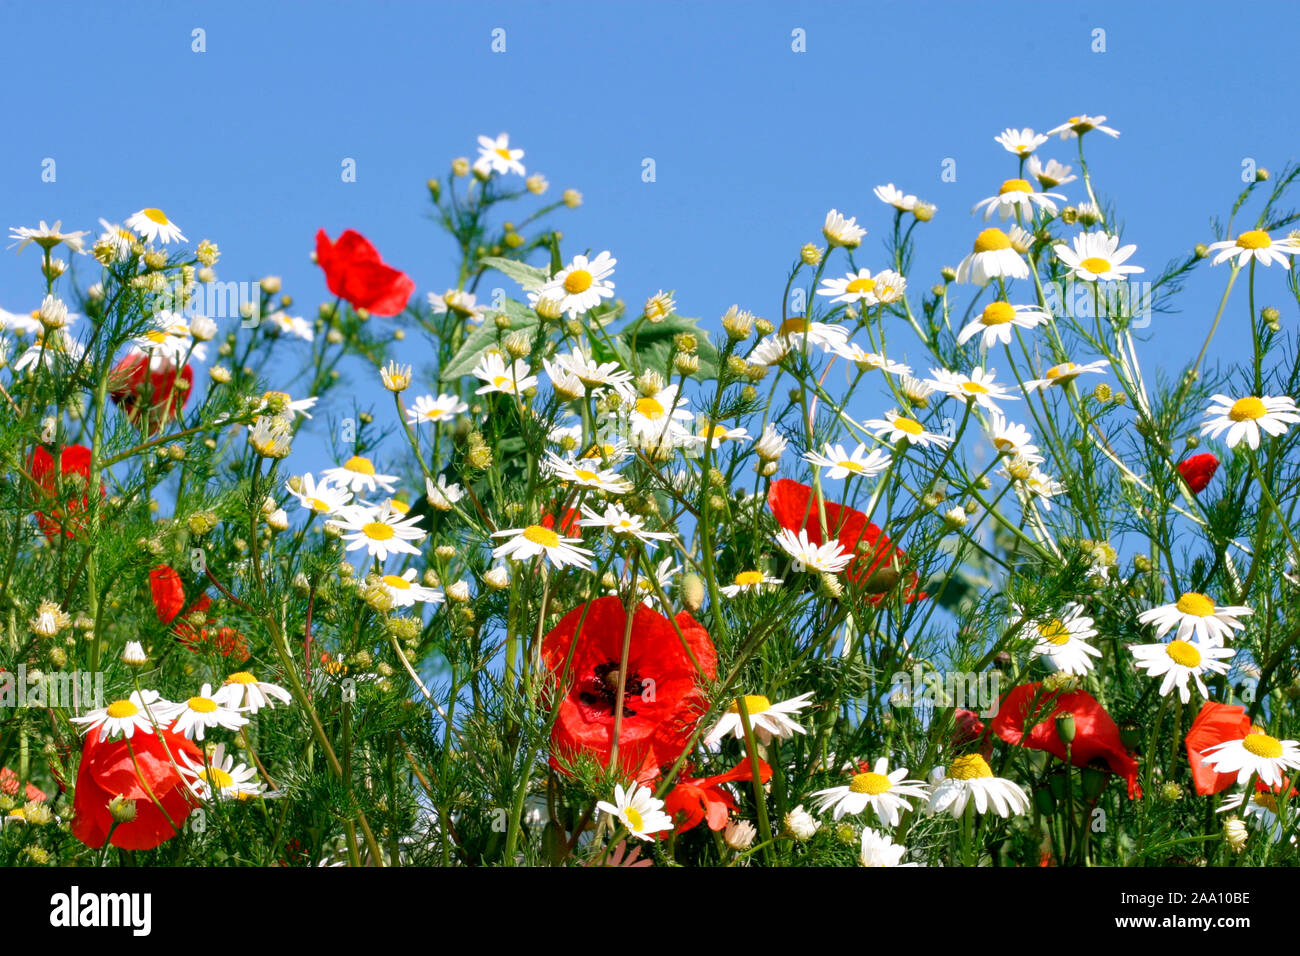 Blumenwiese mit Klatschmohn und Kamille / meadow with corn poppy and carnomile Stock Photo